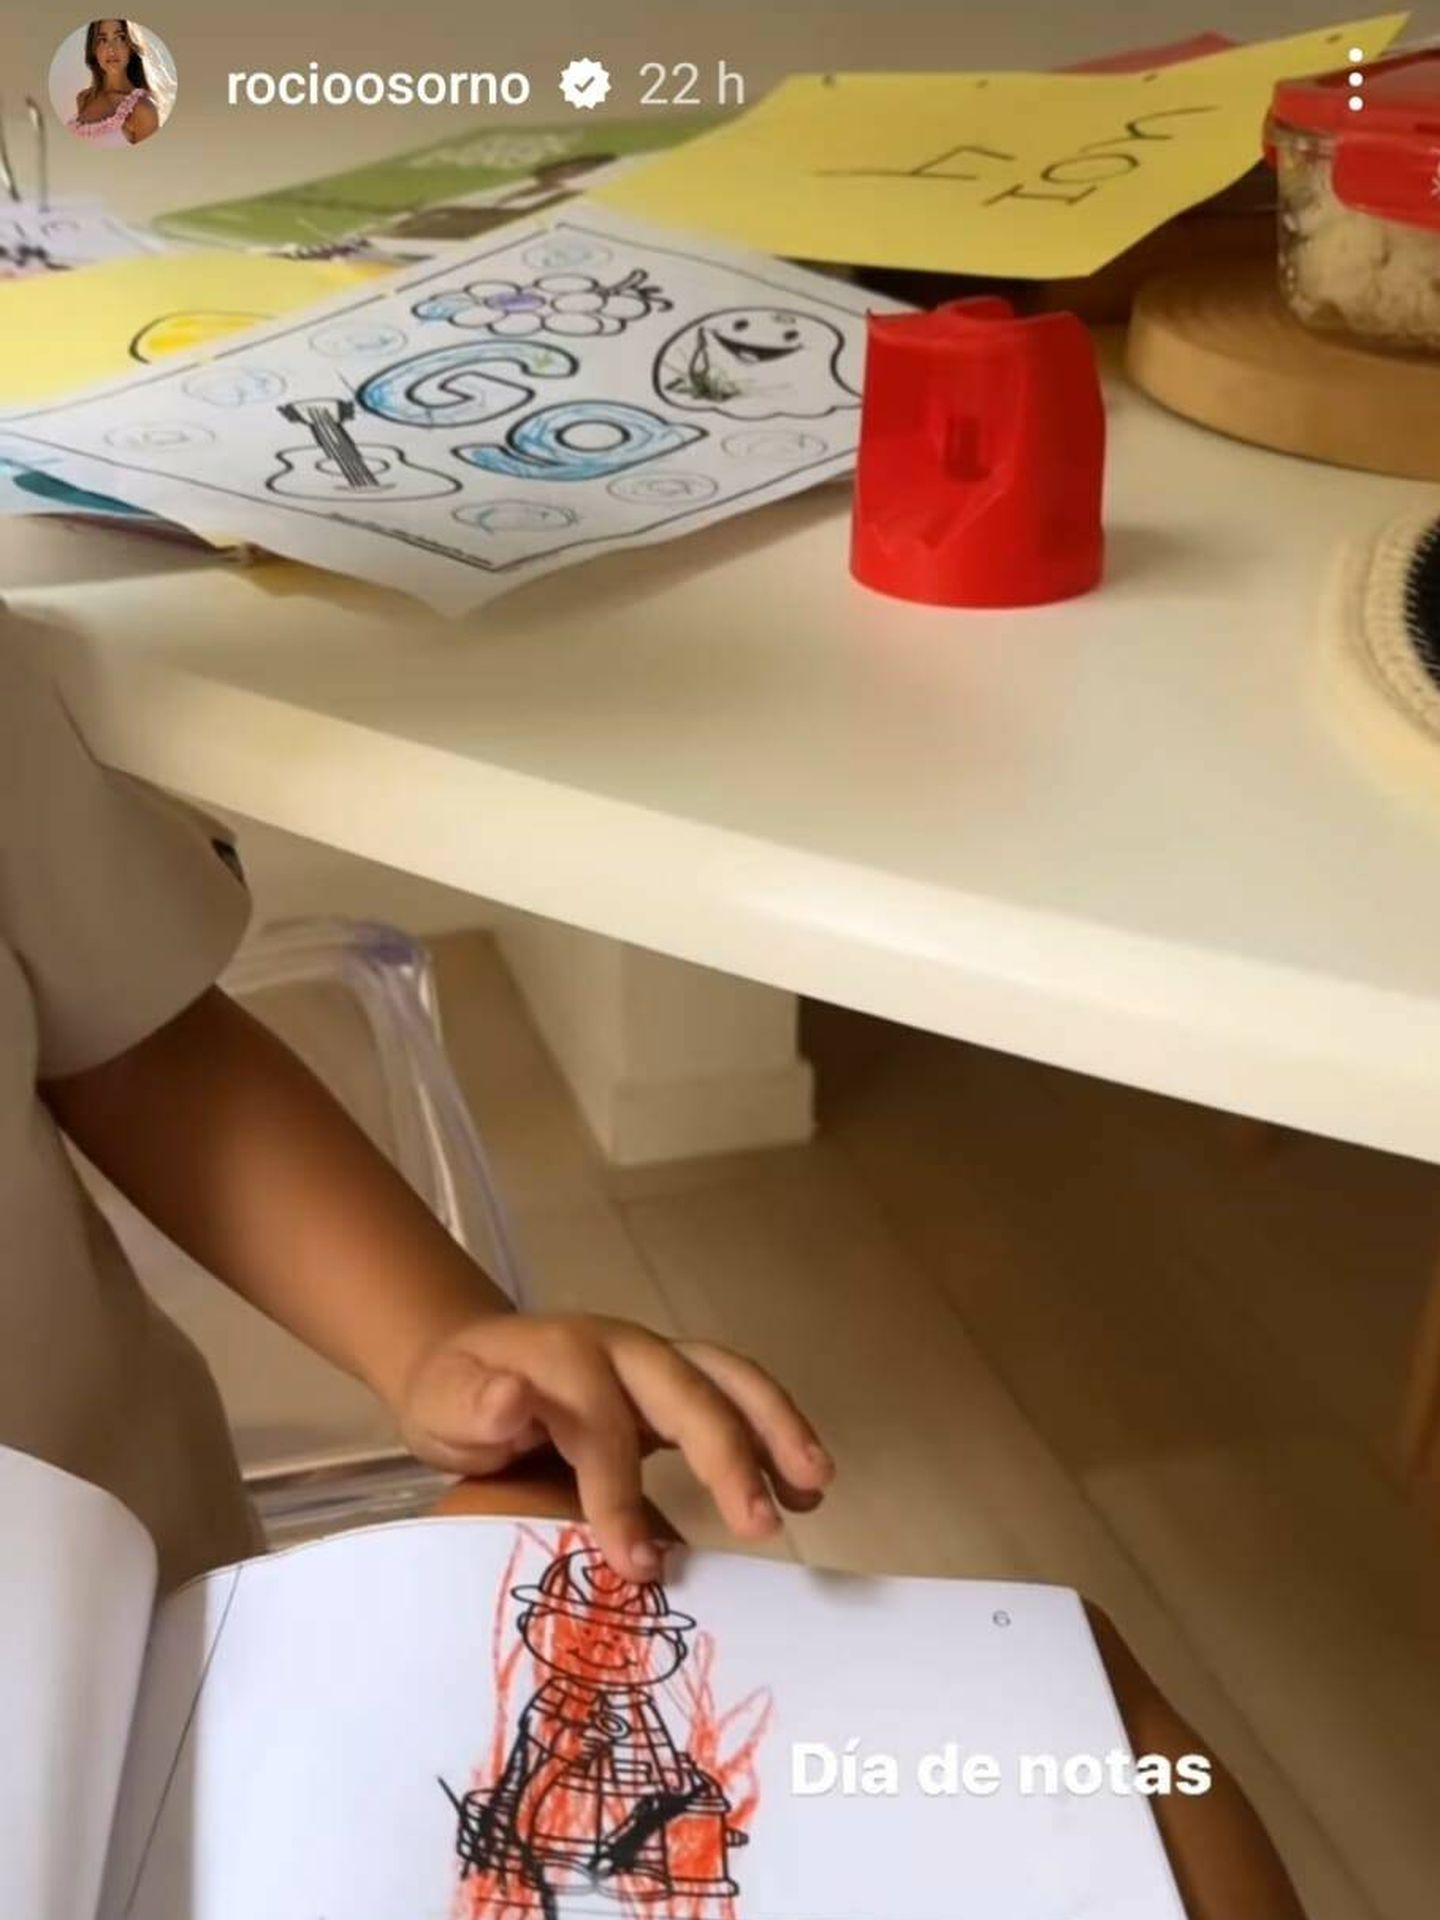 Rocío Osorno mostrando el dibujo de uno de sus hijos (Instagram/@rocioosorno)